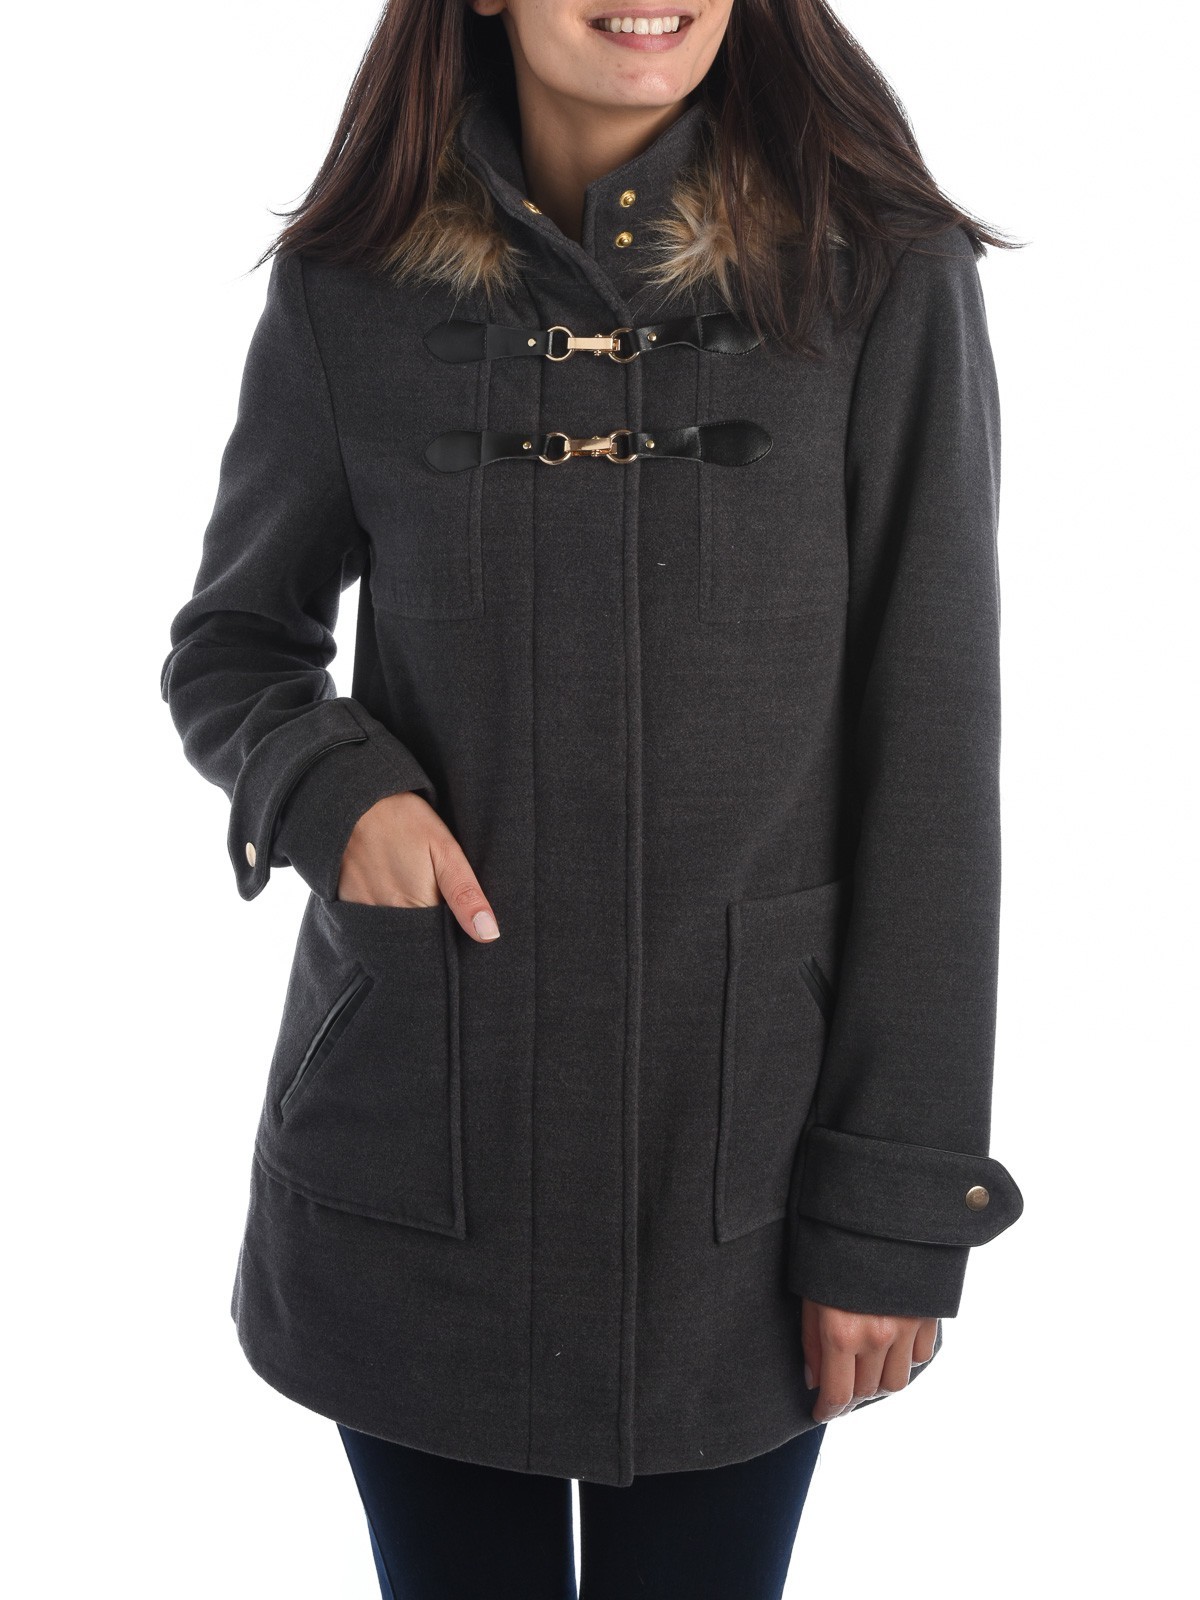 Manteau capuche gris anthracite femme - DistriCenter